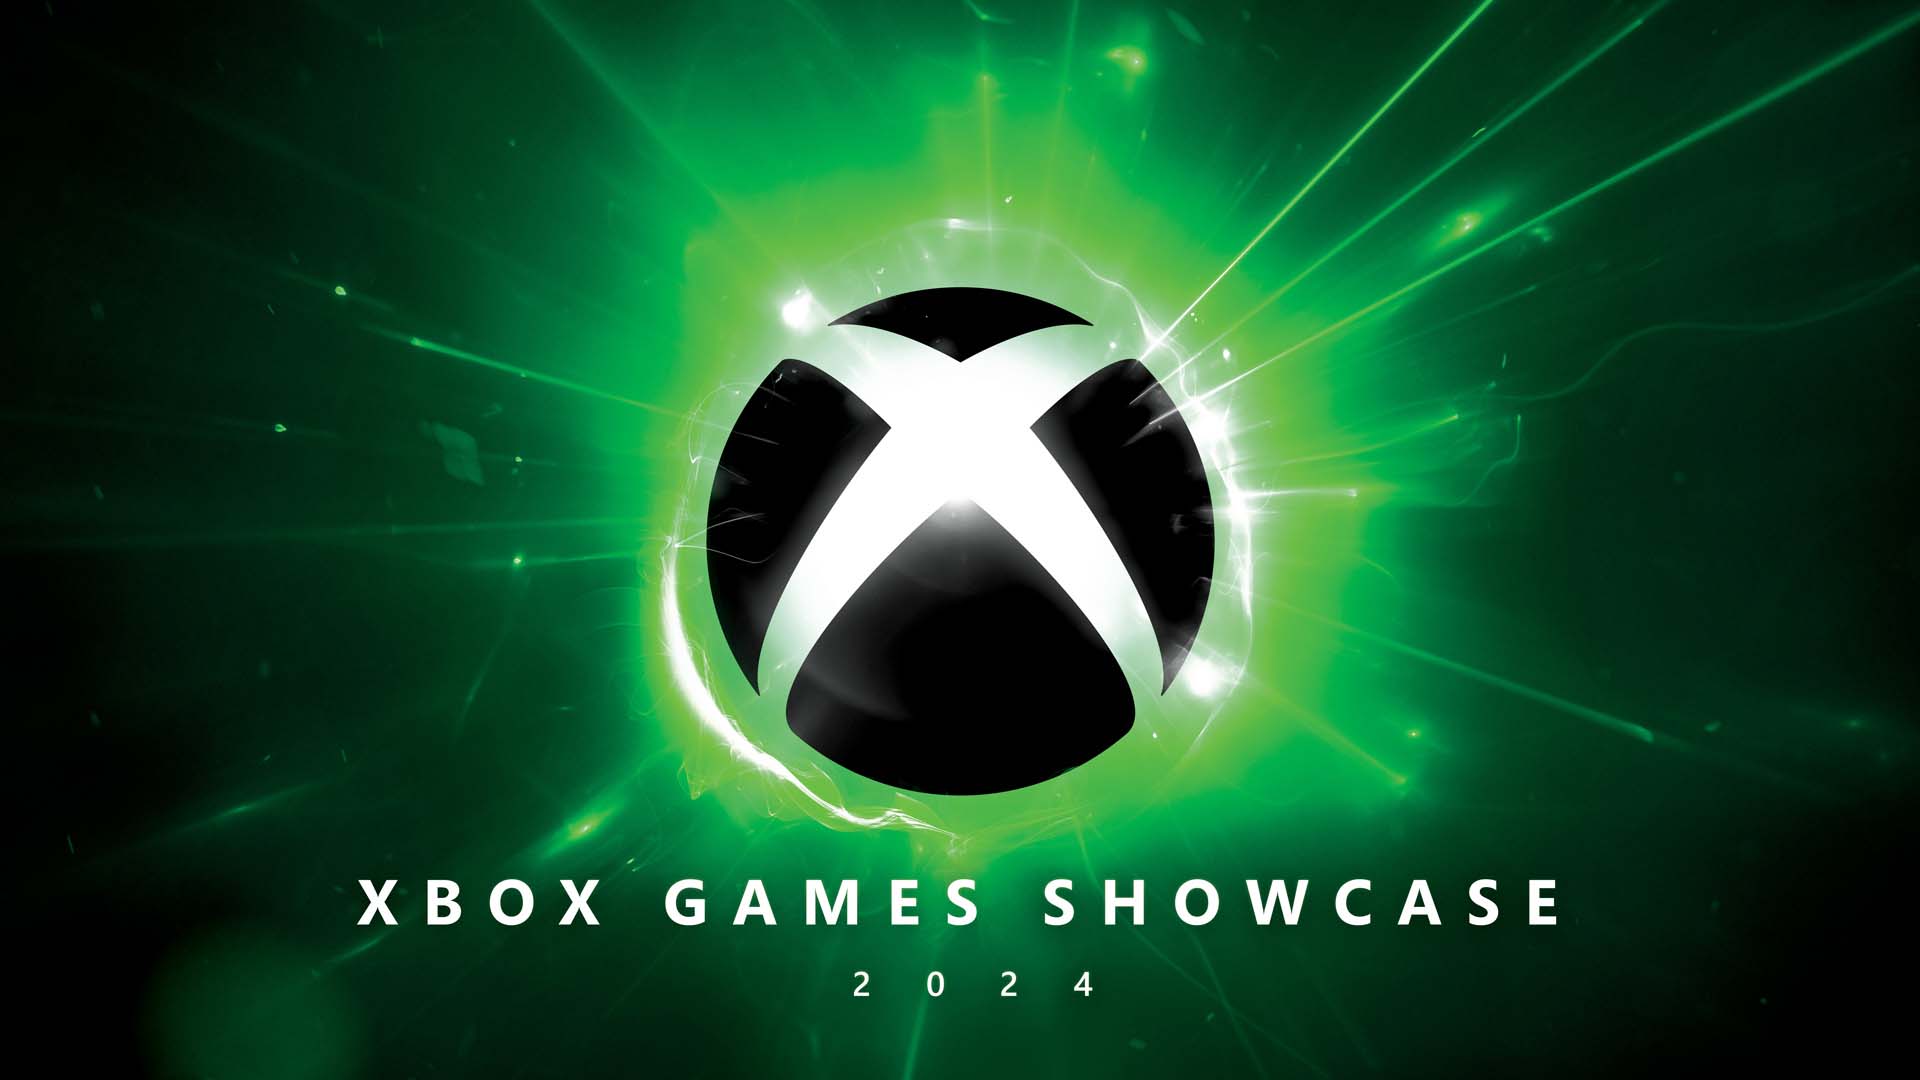 Her yıl düzenlenen Xbox Showcase etkinliği, her yıl oyuncuların gözdesi olmaya devam ediyor. Bu yıl ki etkinlikte tonla yeni oyun ve yeni konsollar duyuruldu. Gelin hep beraber showcase'in içeriğine bakış atalım.